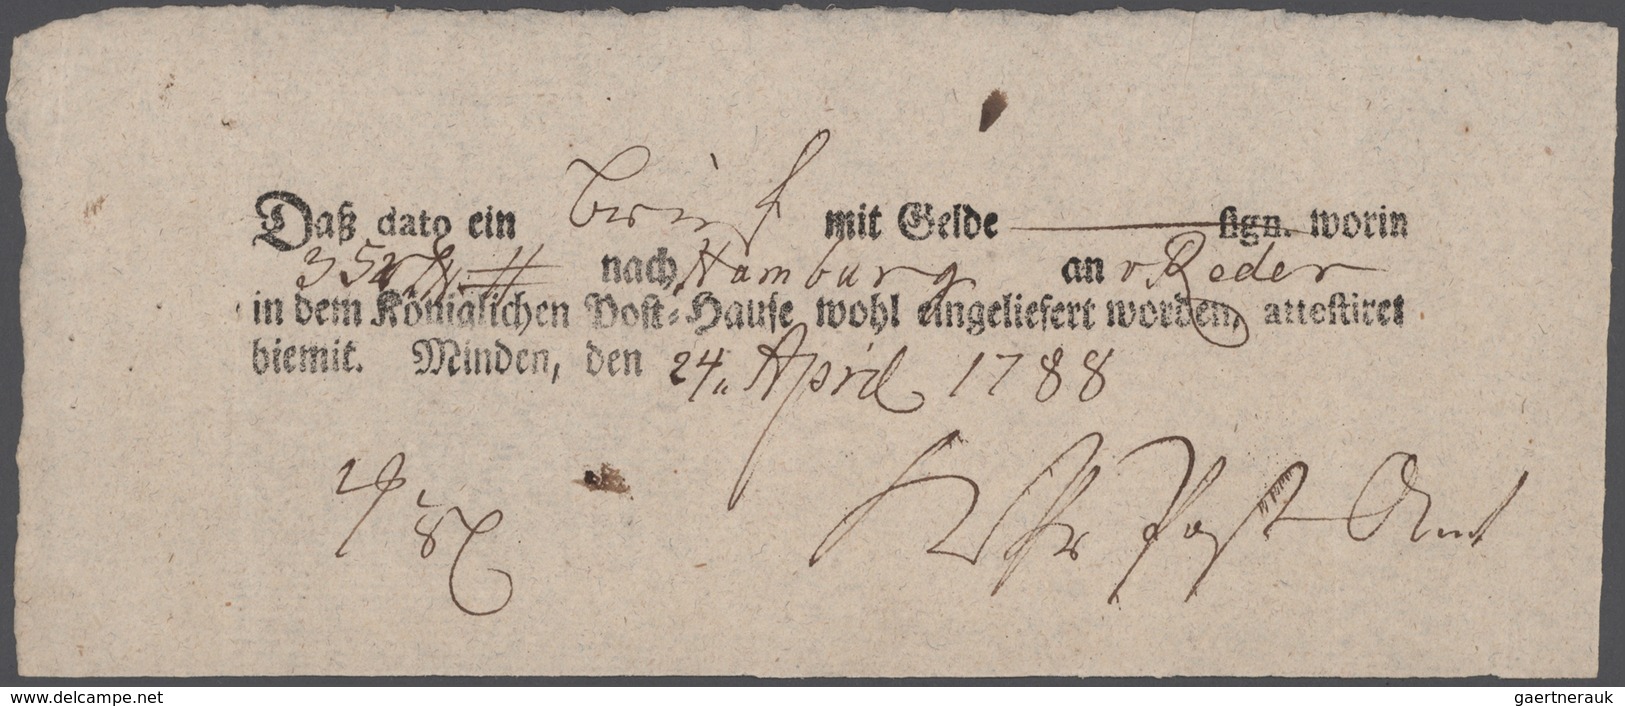 Preußen - Marken und Briefe: 1788/1871, Minden, interess. Heimatsammlung von 52 Belegen mit vielen b